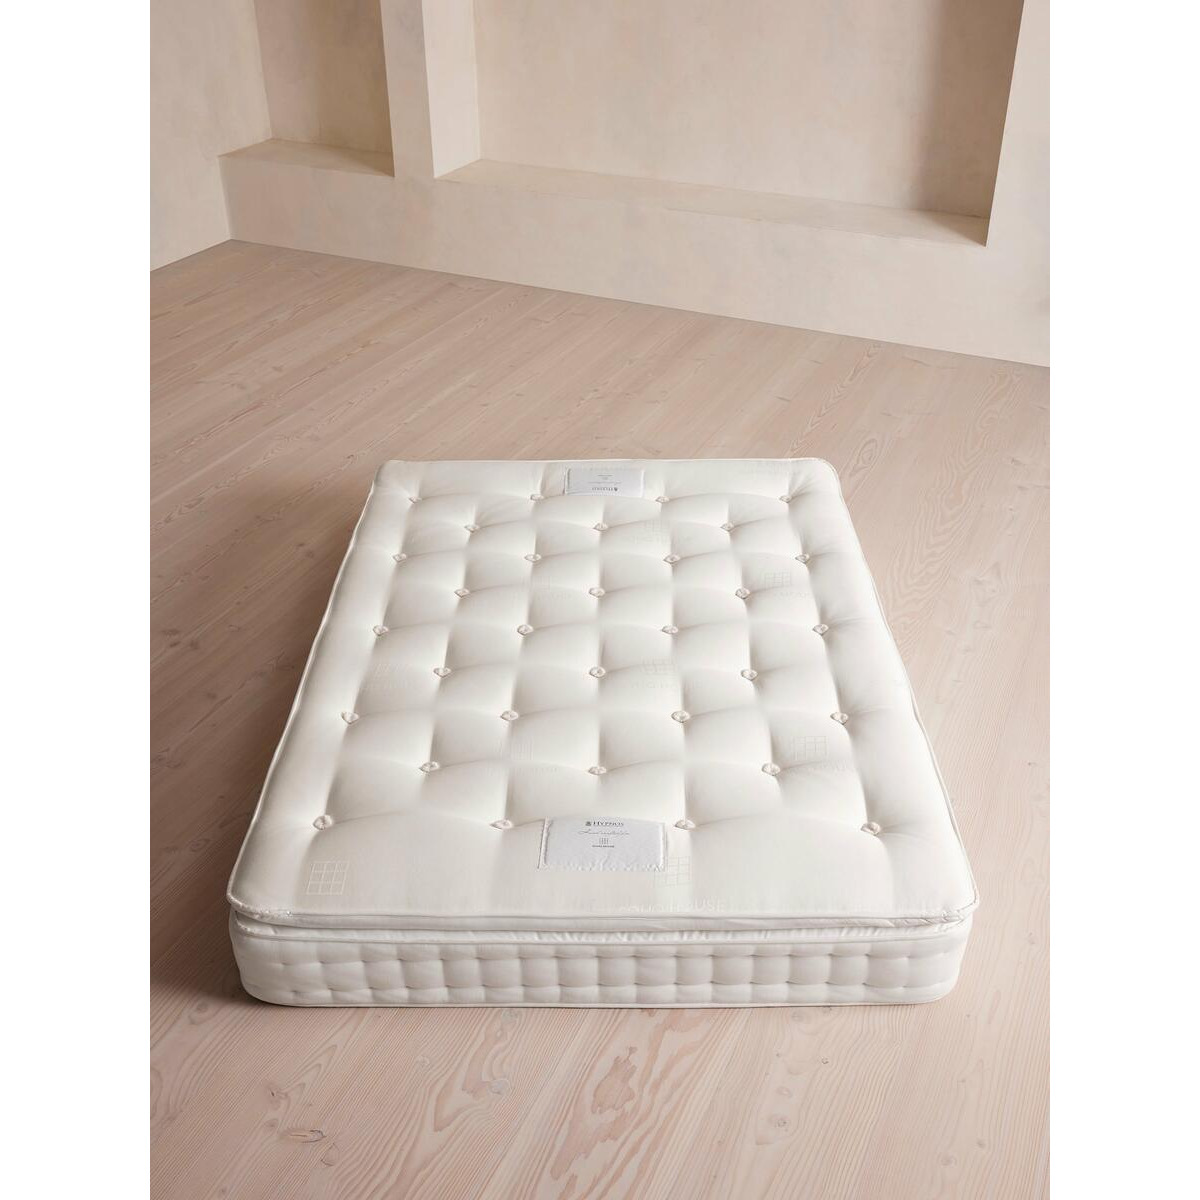 Hypnos Woolsleeper Pillow Top Mattress, UK King (150x200cm)